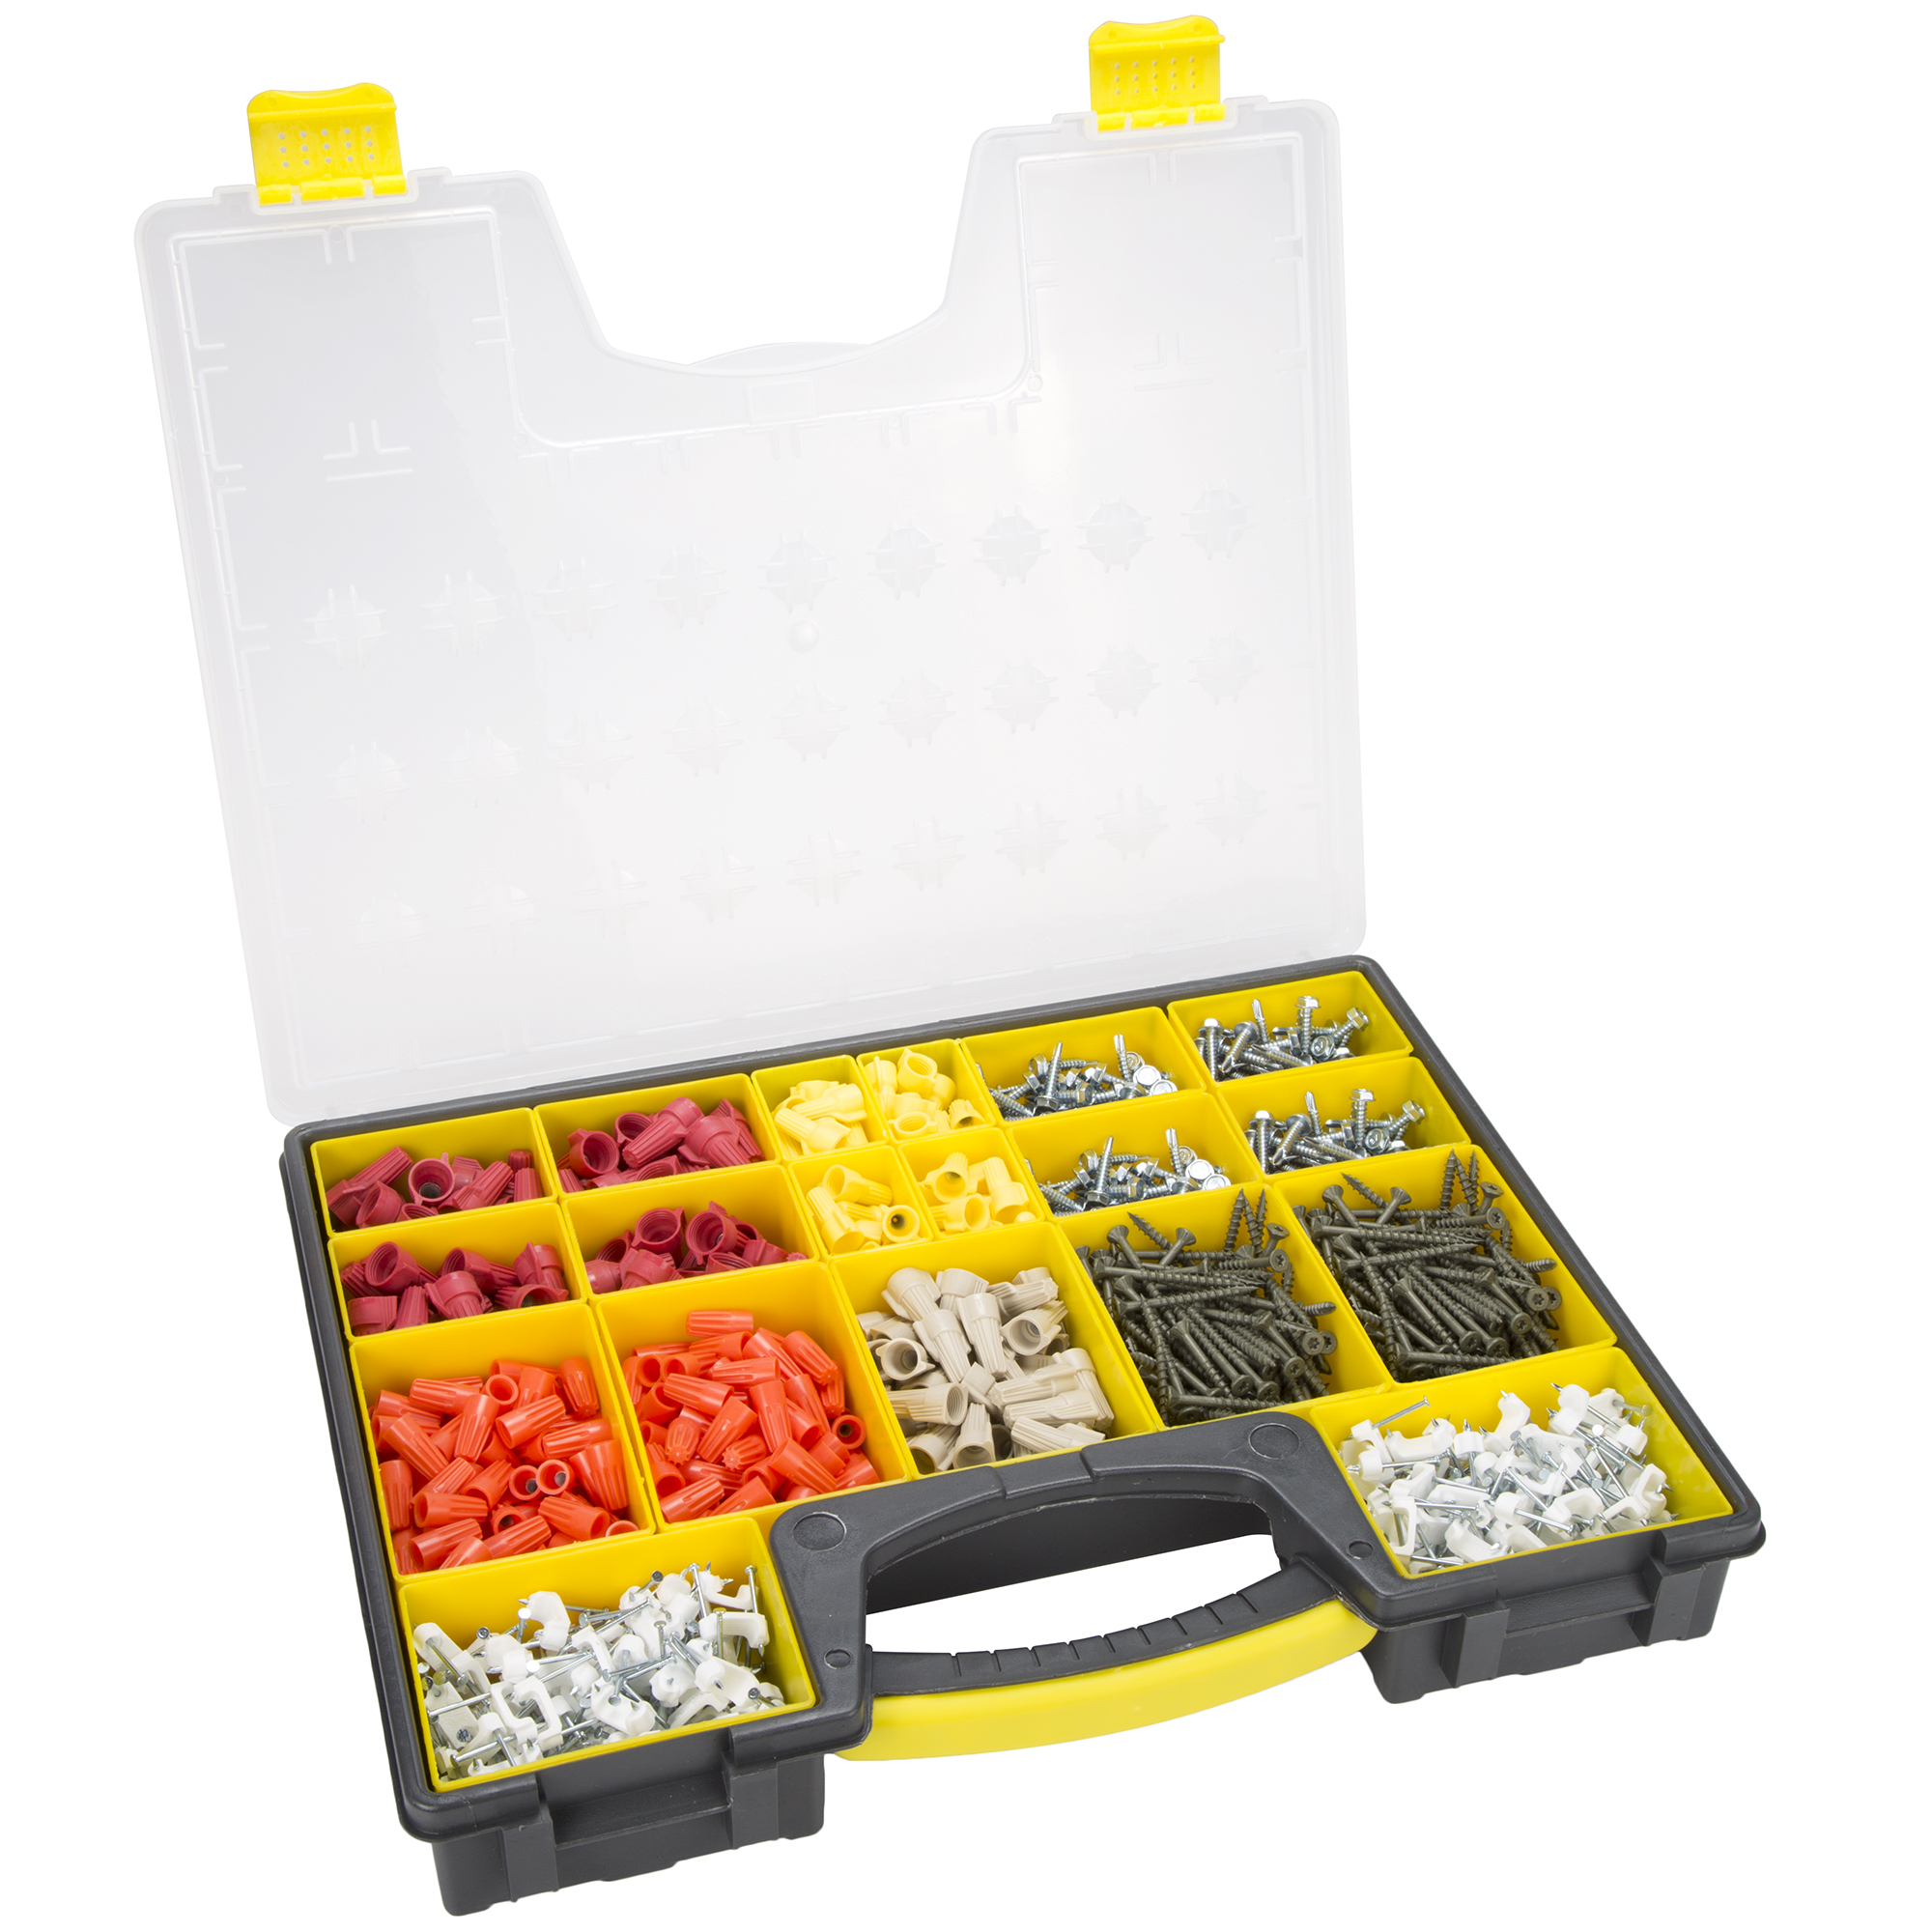 Stalwart Parts & Crafts Portable Storage Organizer 4 Box Set - Free Shipping